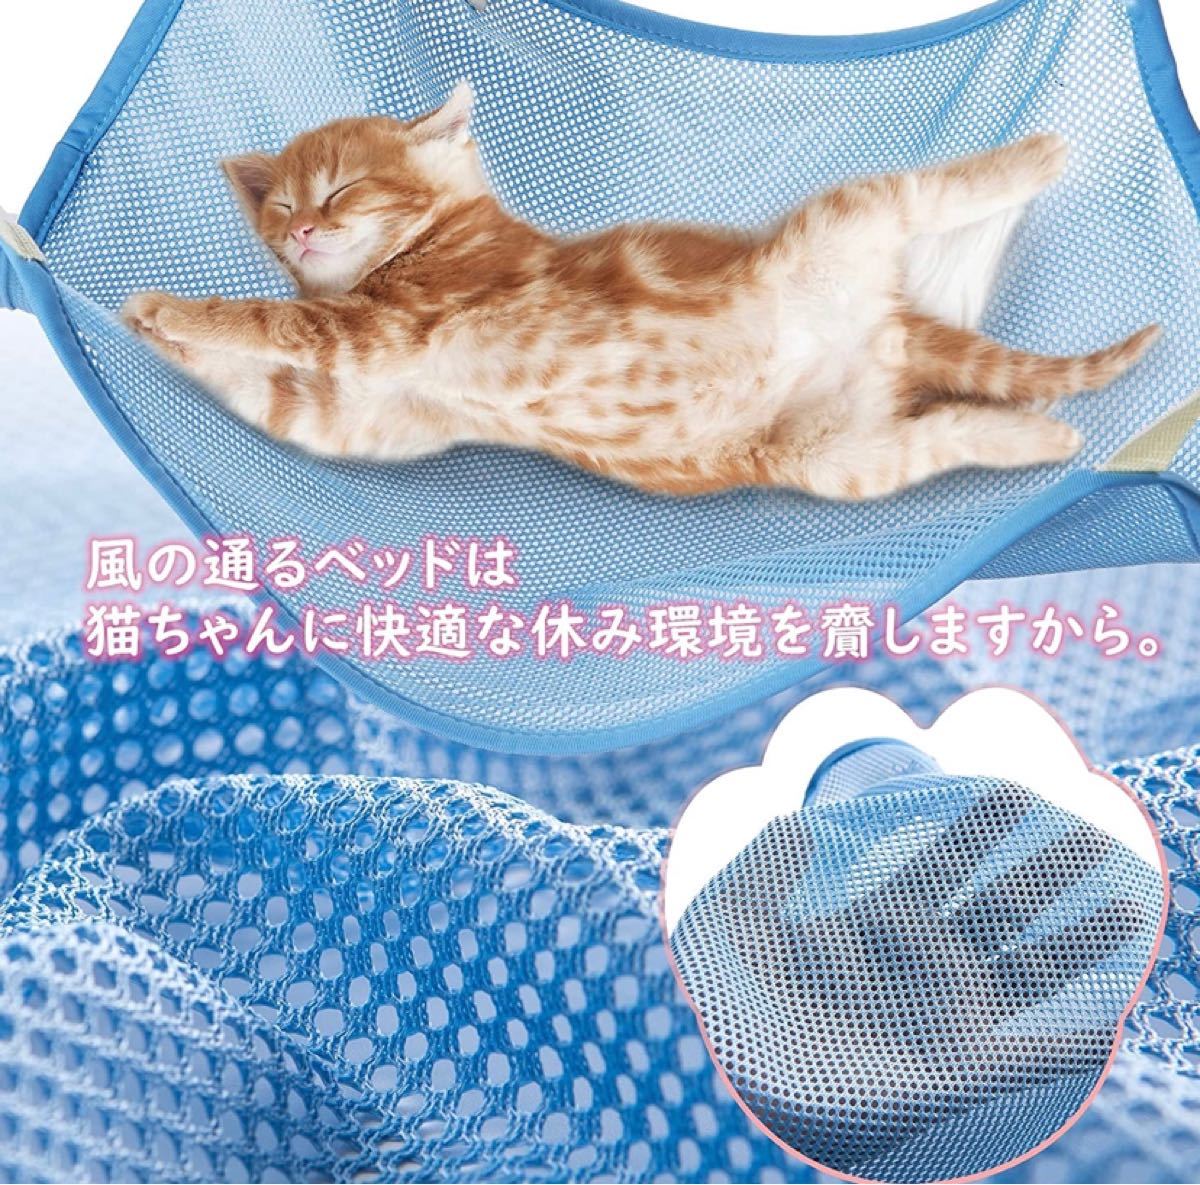 ハンモック 猫 調節可能 ペット用 メッシュ 通気性 強度アップ 丸洗い 日向ぼっこ 遊び場 キャット寝床 小動物用 